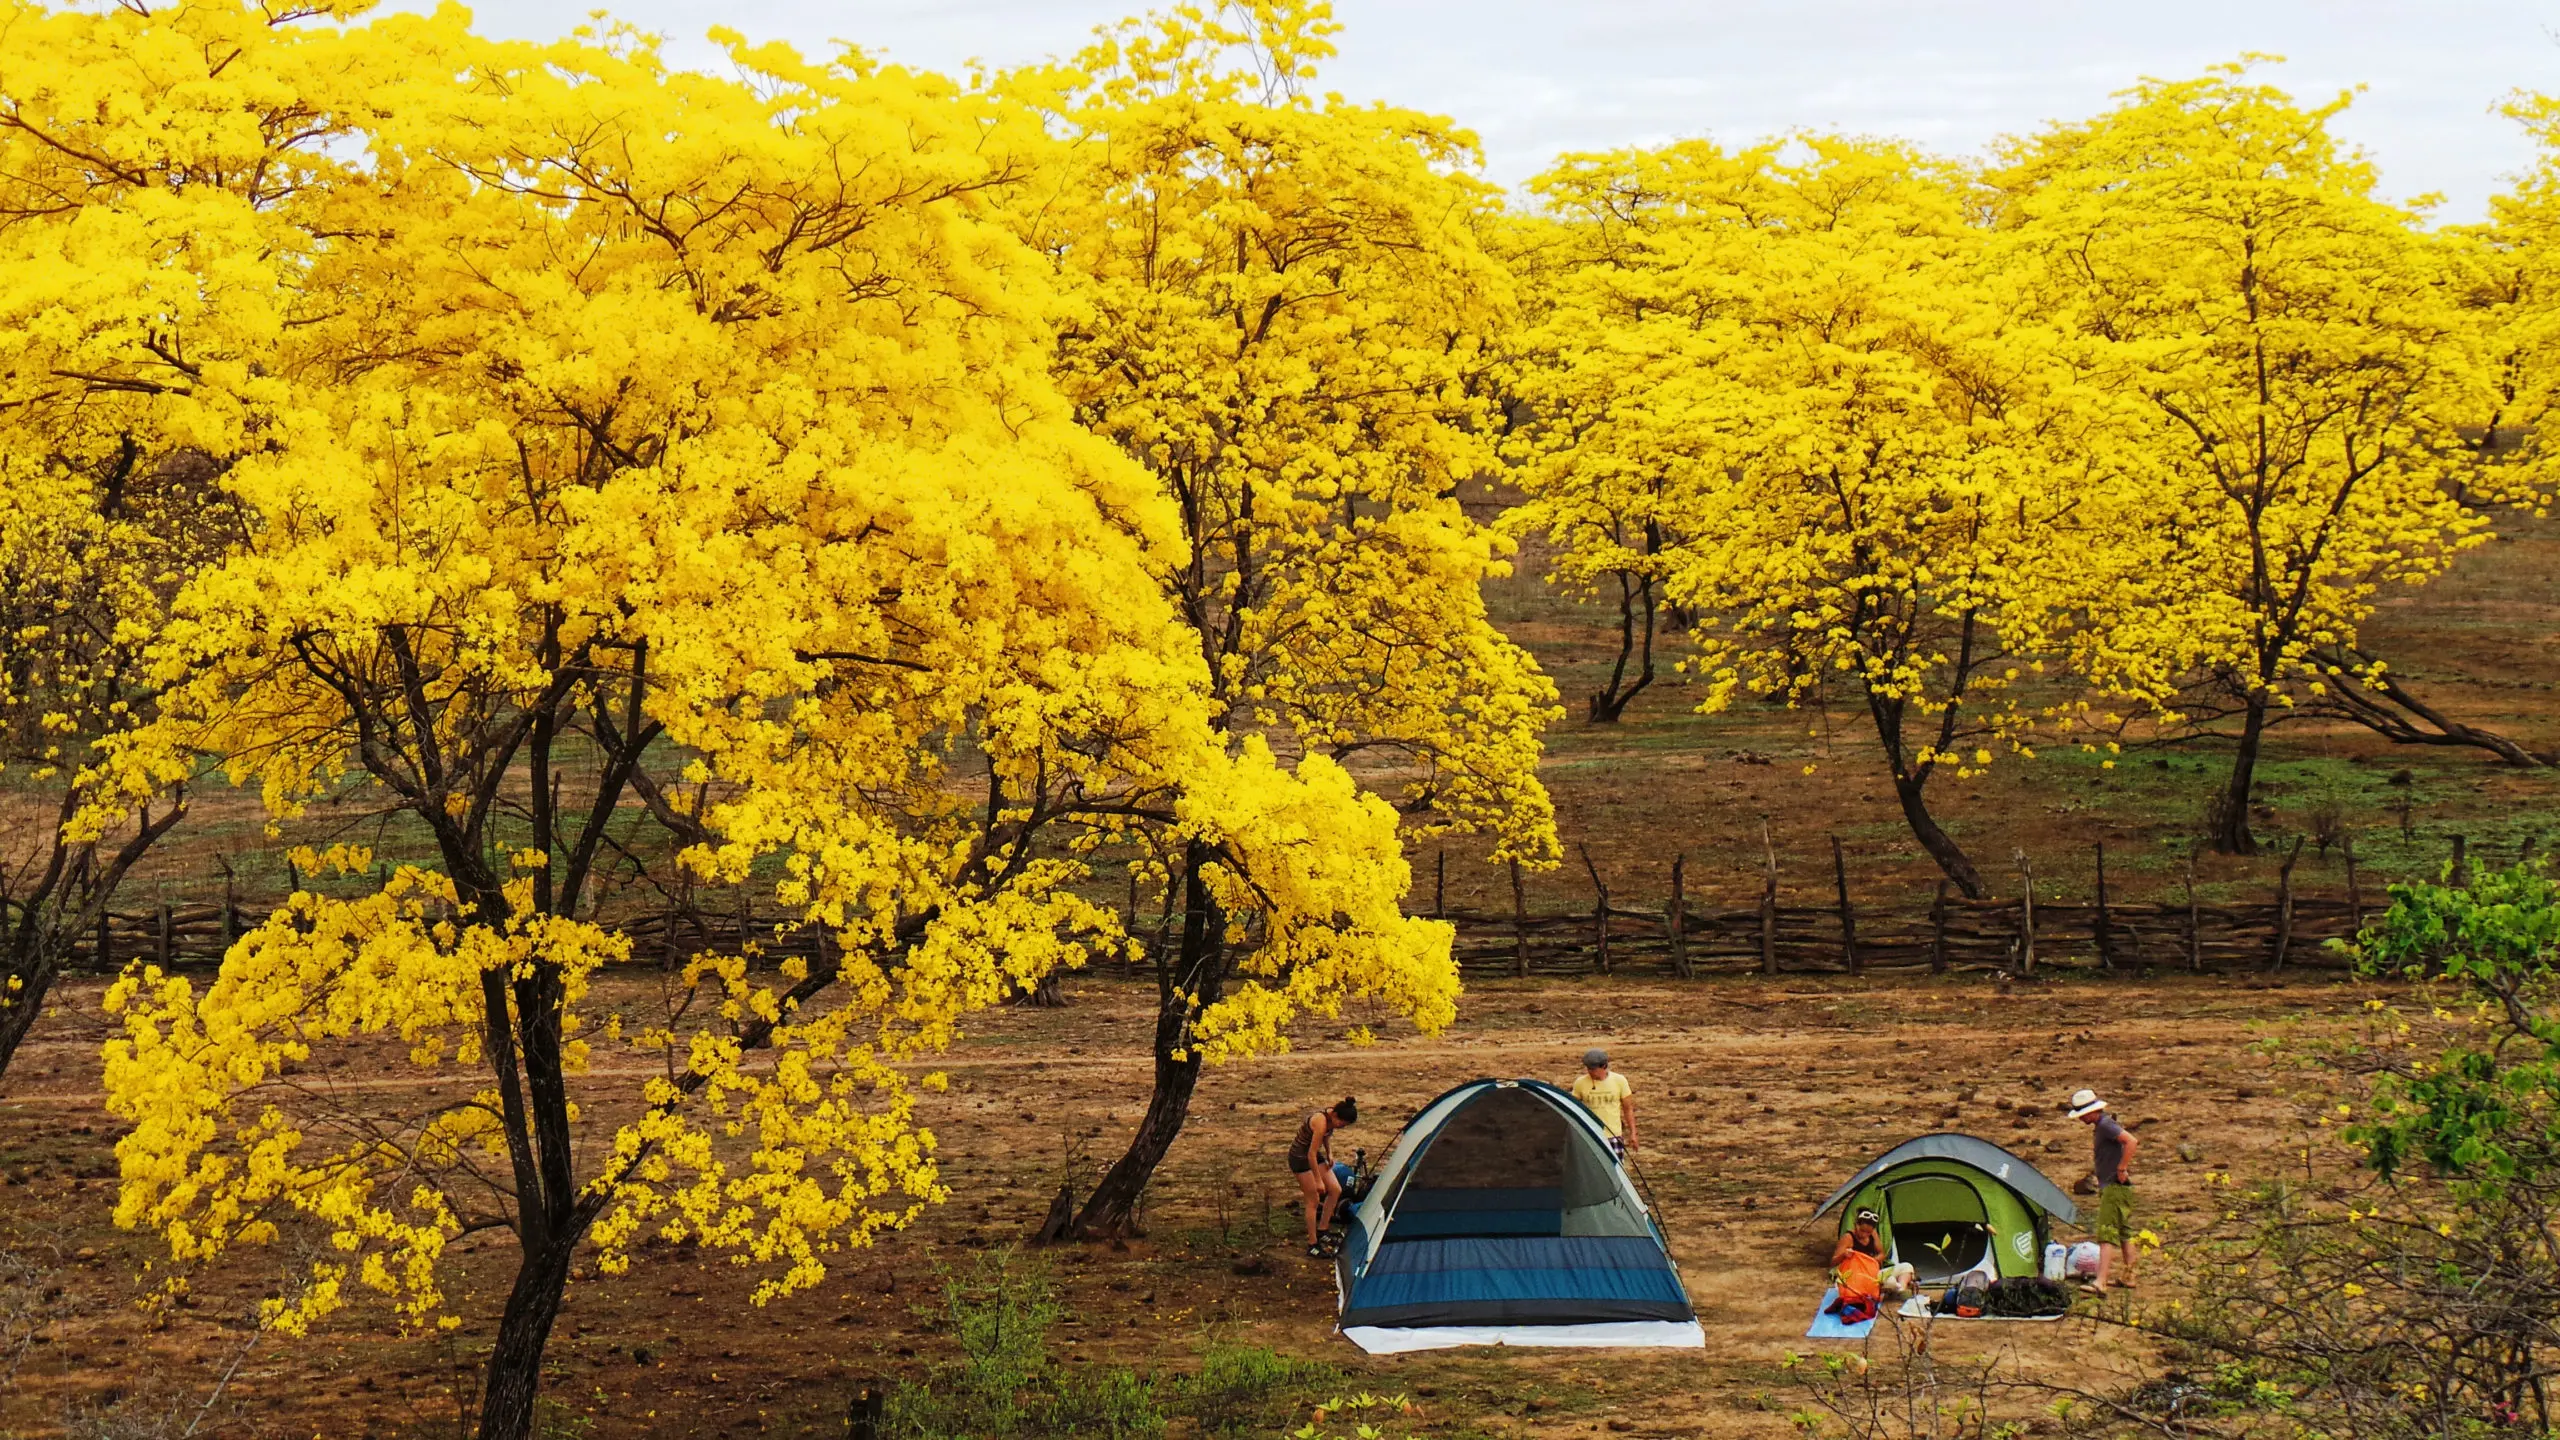 arboles con flores amarillas - Cómo se llaman los árboles amarillos